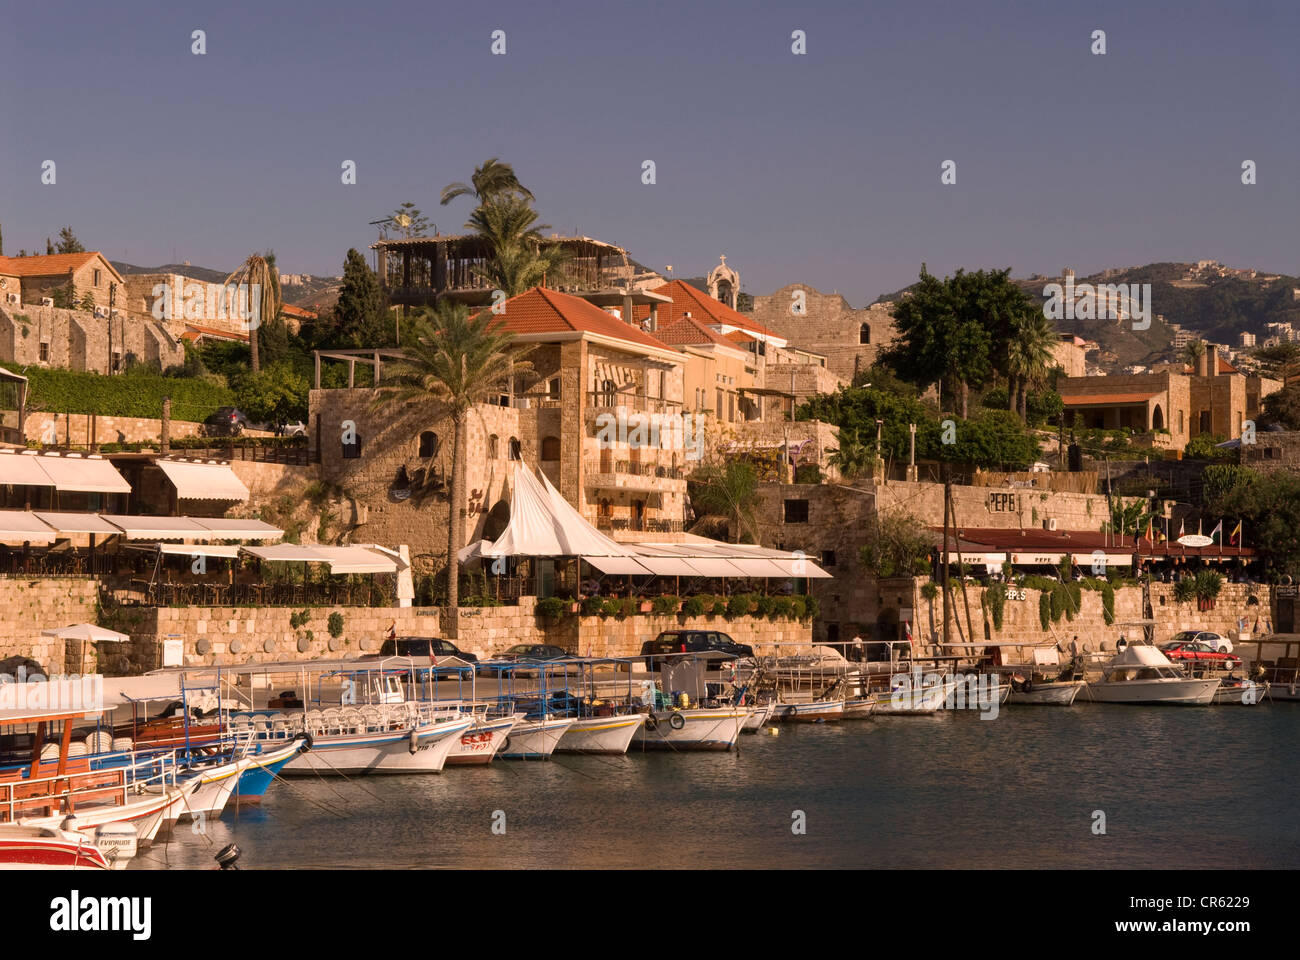 Allgemeine Ansicht des malerischen Hafens von byblos (jbail), Libanon. Stockfoto